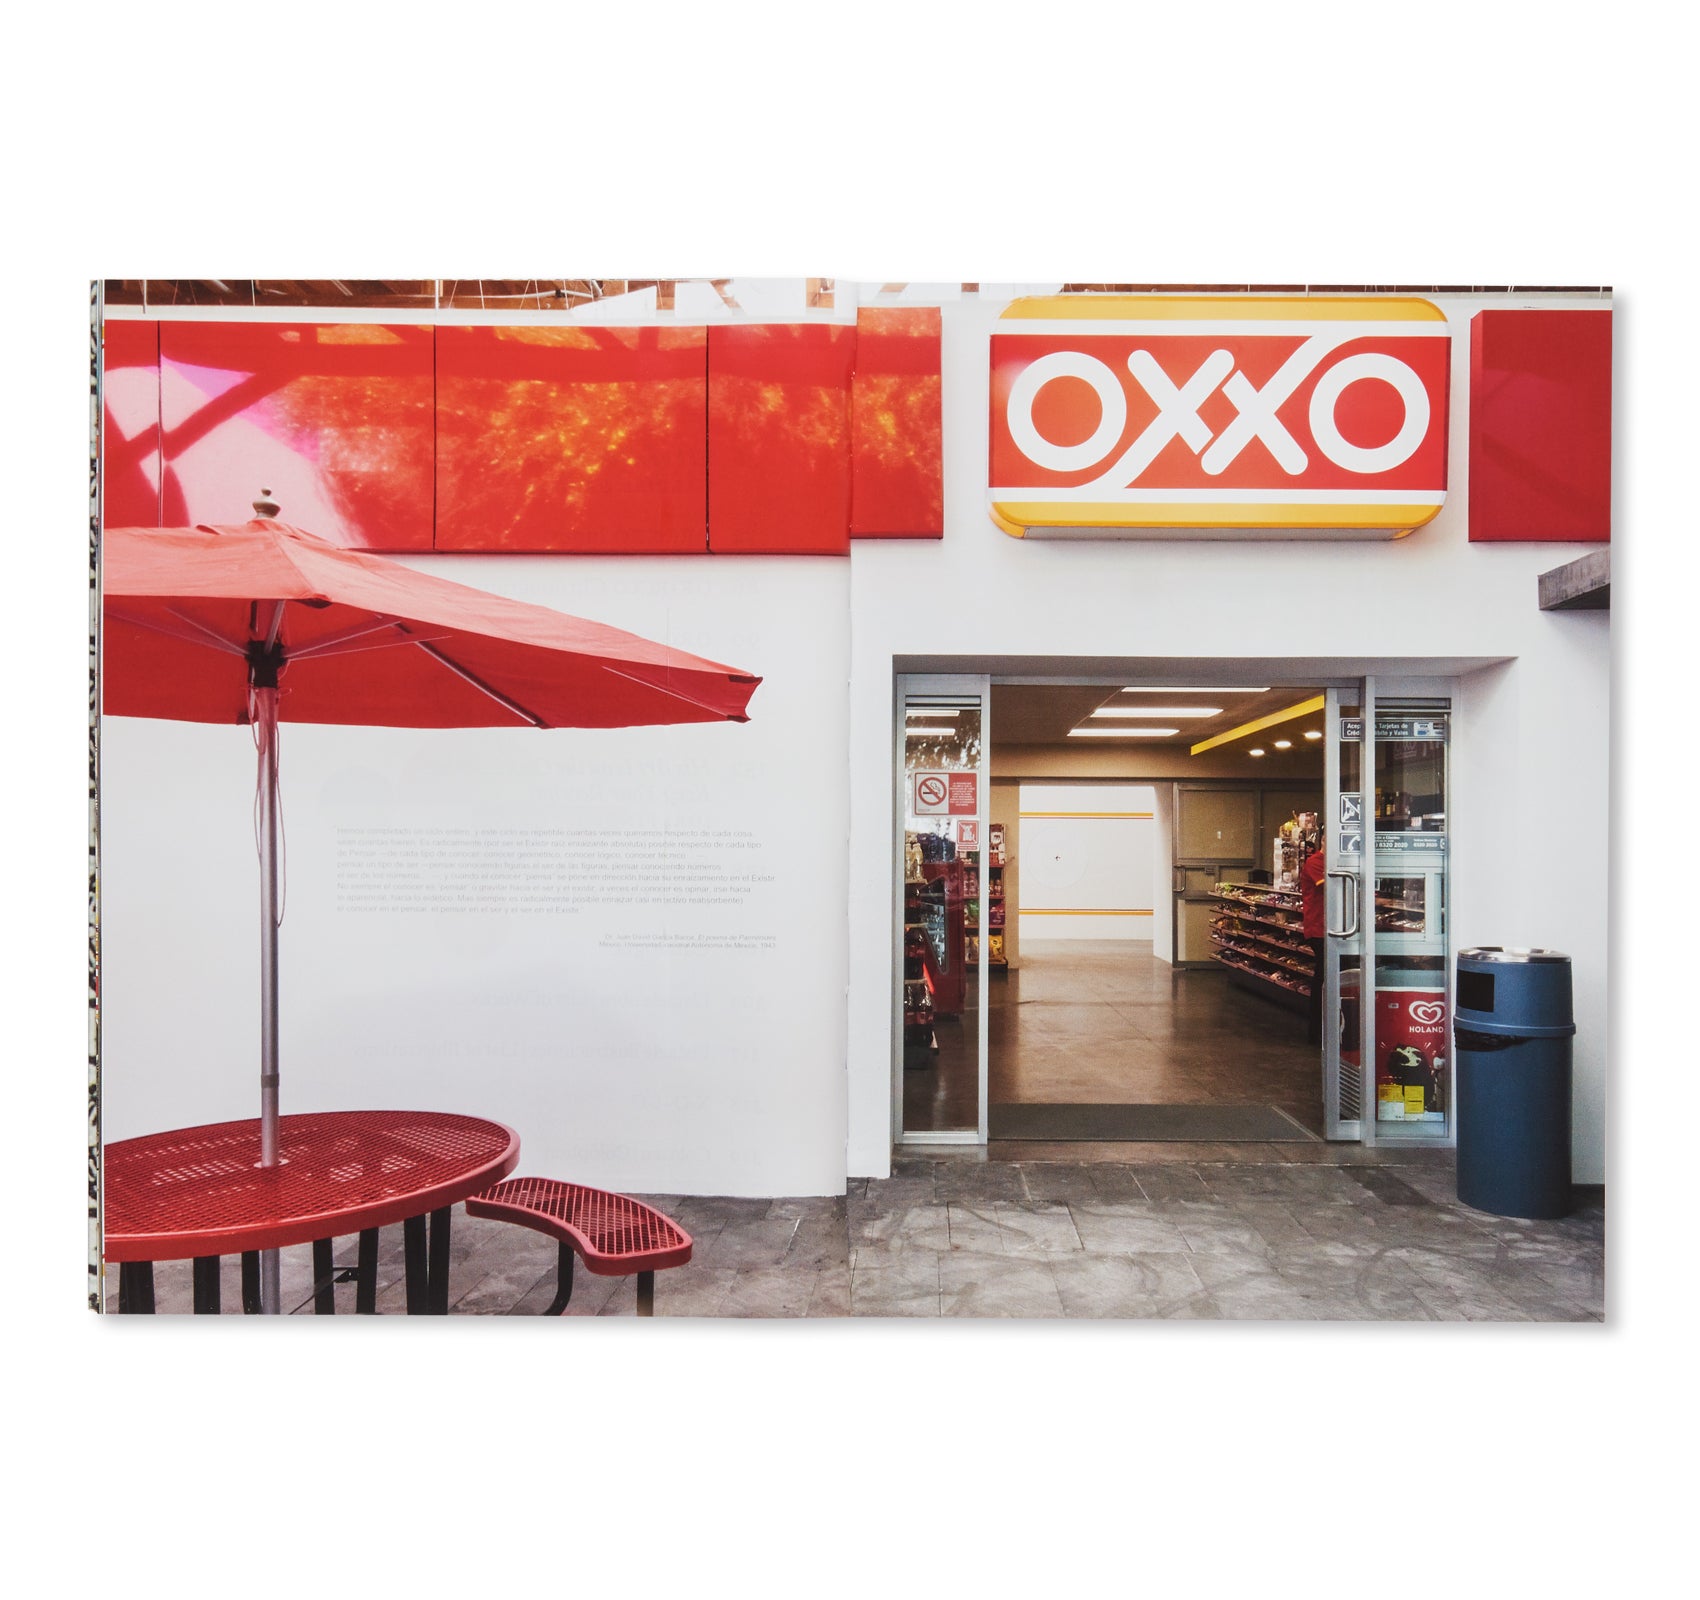 OROXXO by Gabriel Orozco